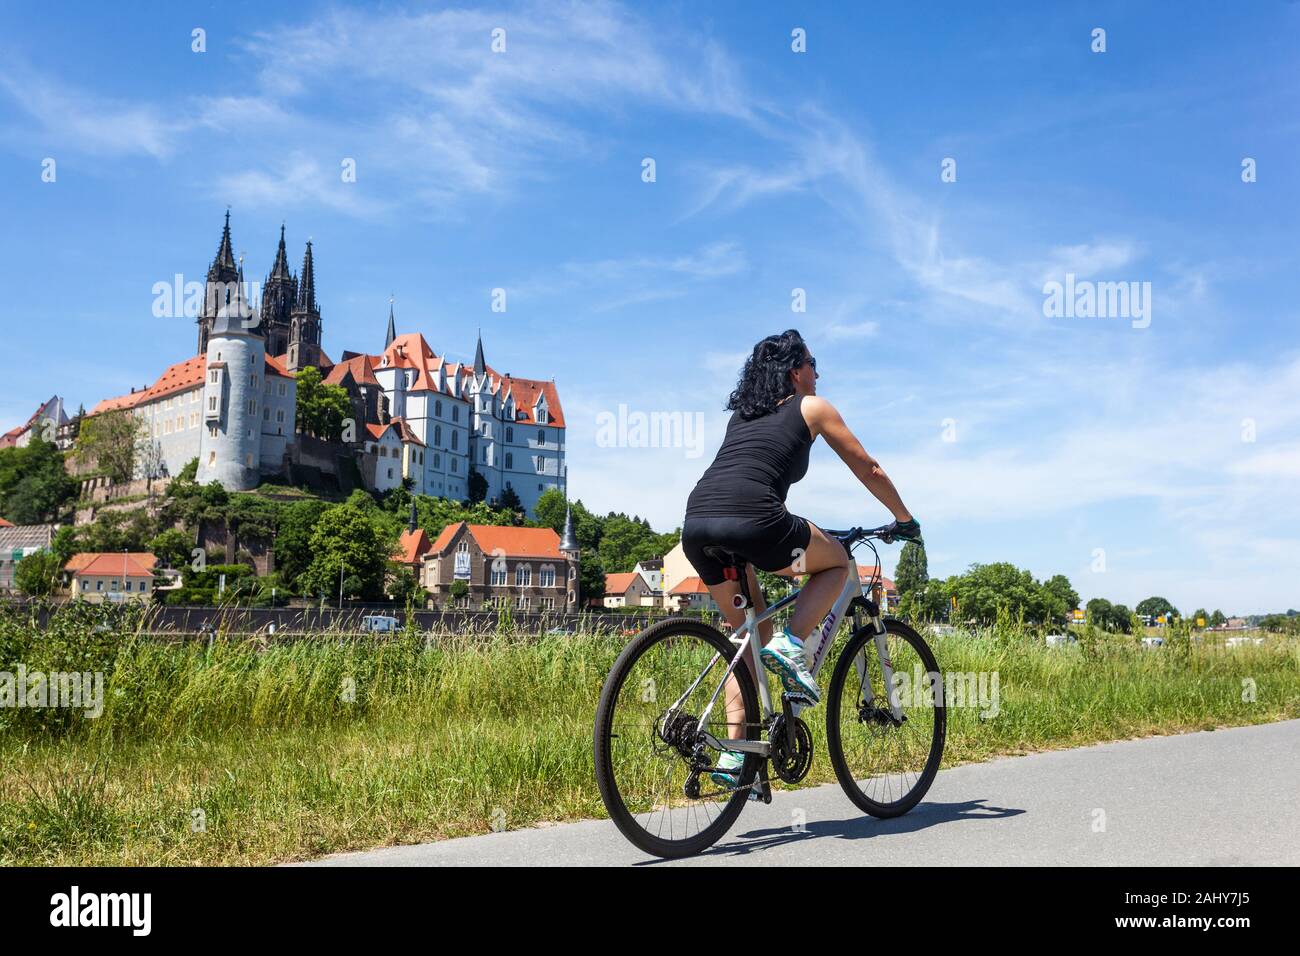 Une femme aime faire du vélo le long de la rivière Elbe Meissen Saxe vacances en Allemagne, vélo d'équitation, magnifique paysage à vélo Banque D'Images